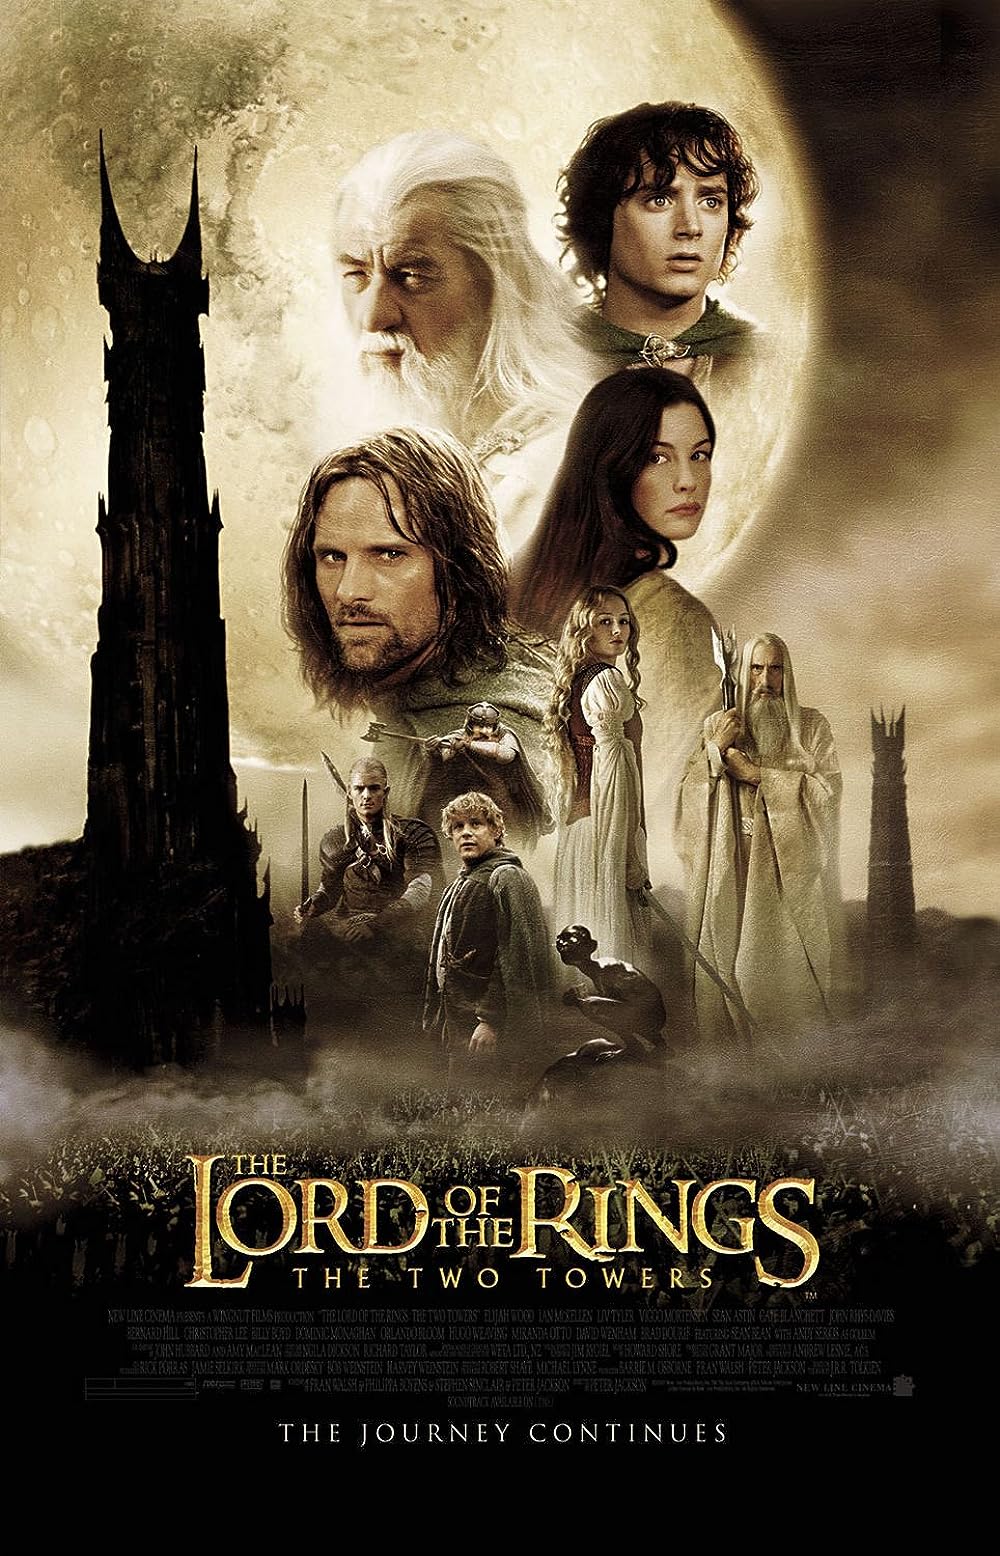 ดูหนังออนไลน์ฟรี The Lord of The Rings The Two Towers 2 ศึกหอคอยคู่กู้พิภพ 2002 พากย์ไทย